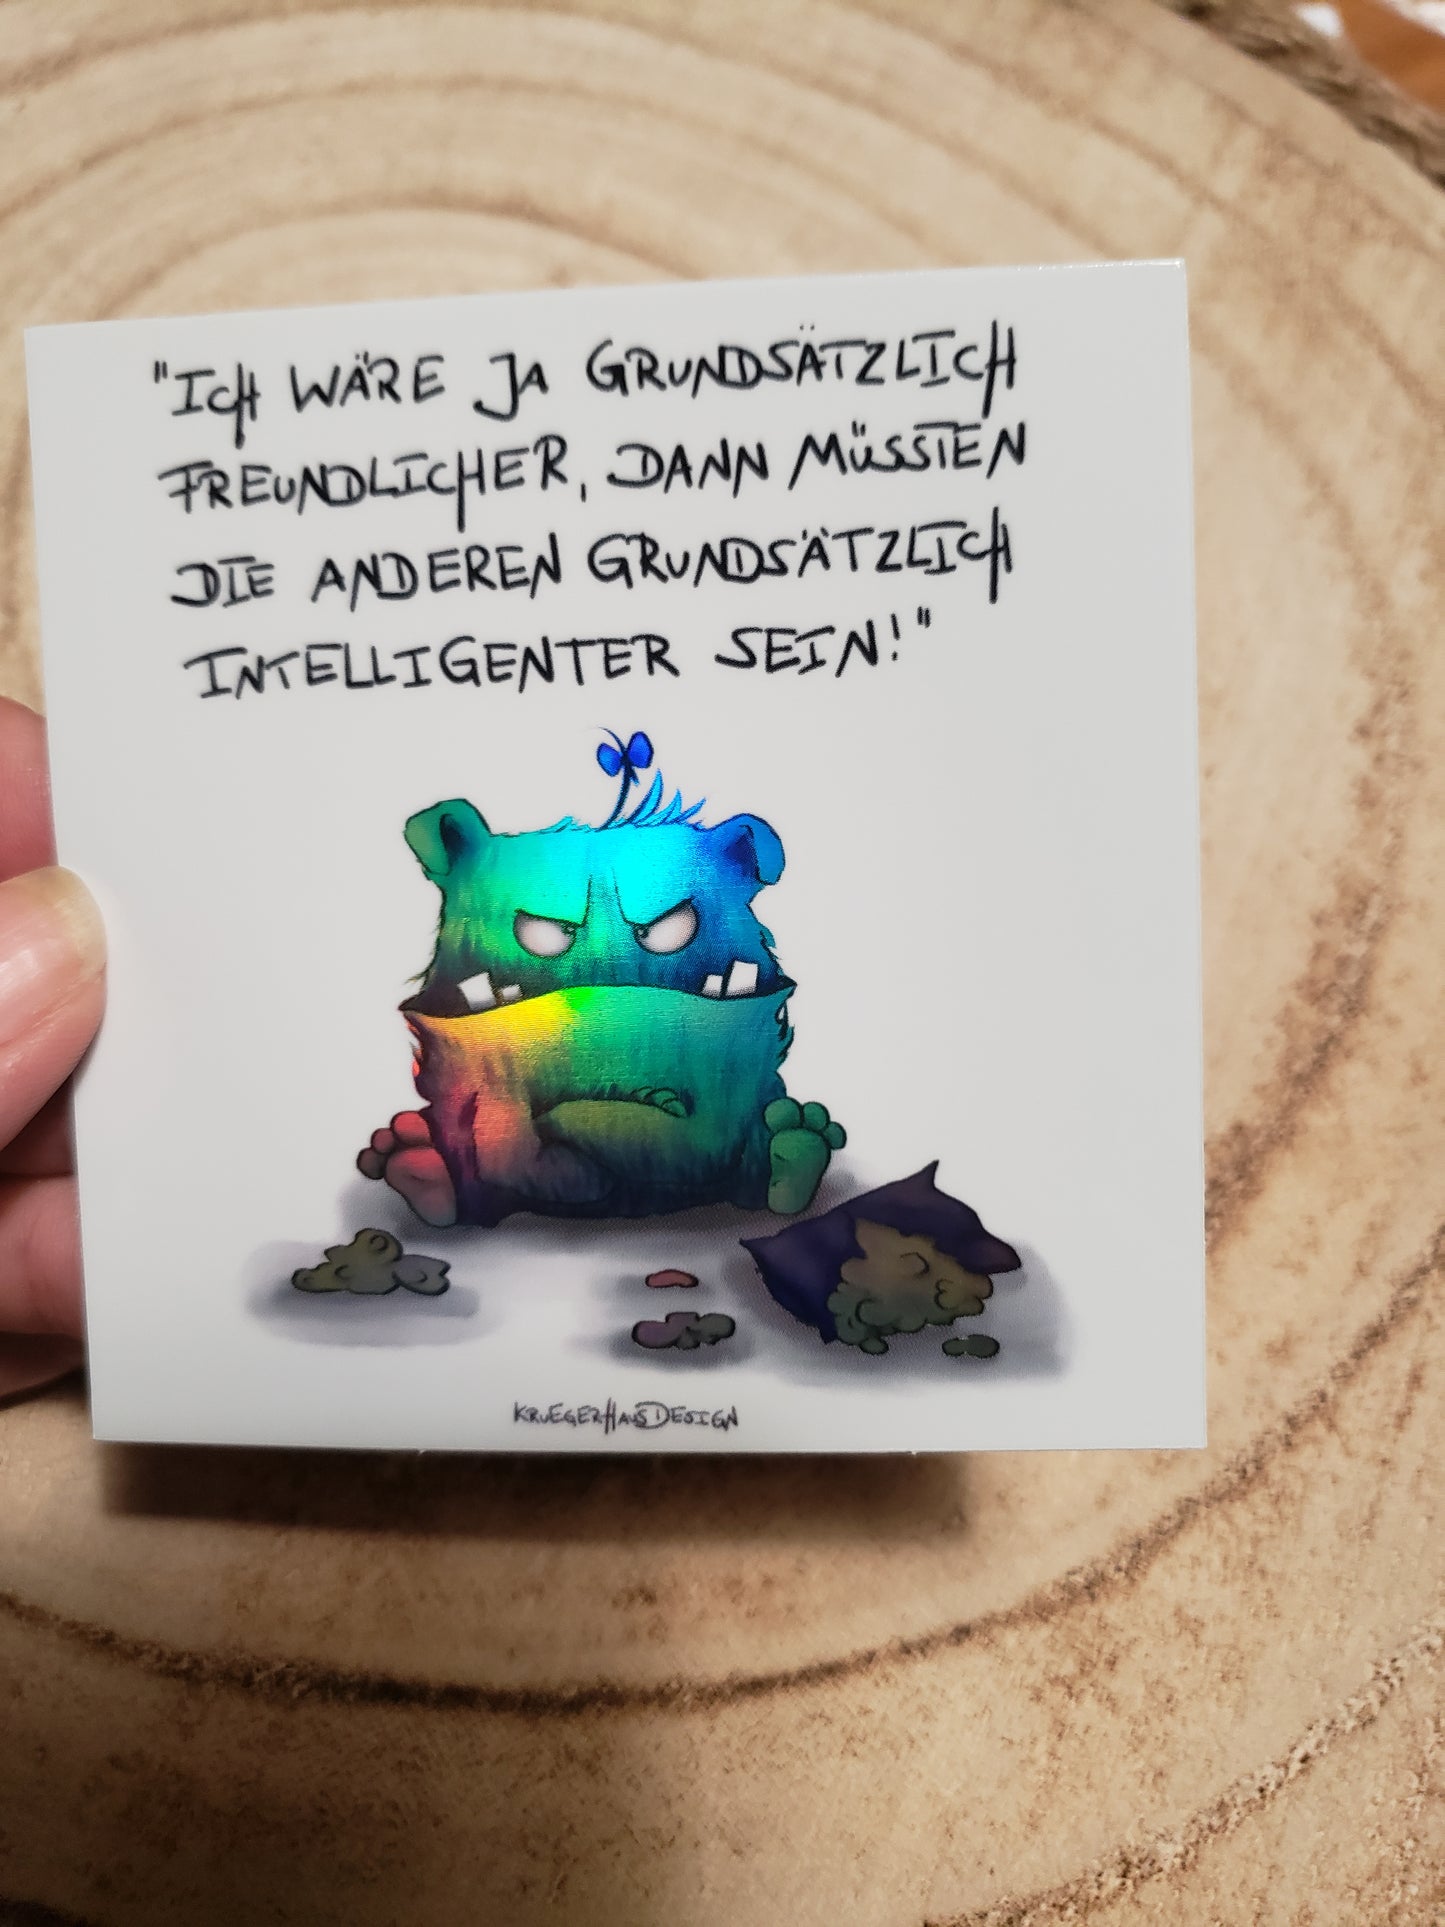 Sticker Hologram Kruegerhausdesign mit Monster und Spruch "Ich wäre ja grundsätzlich.."